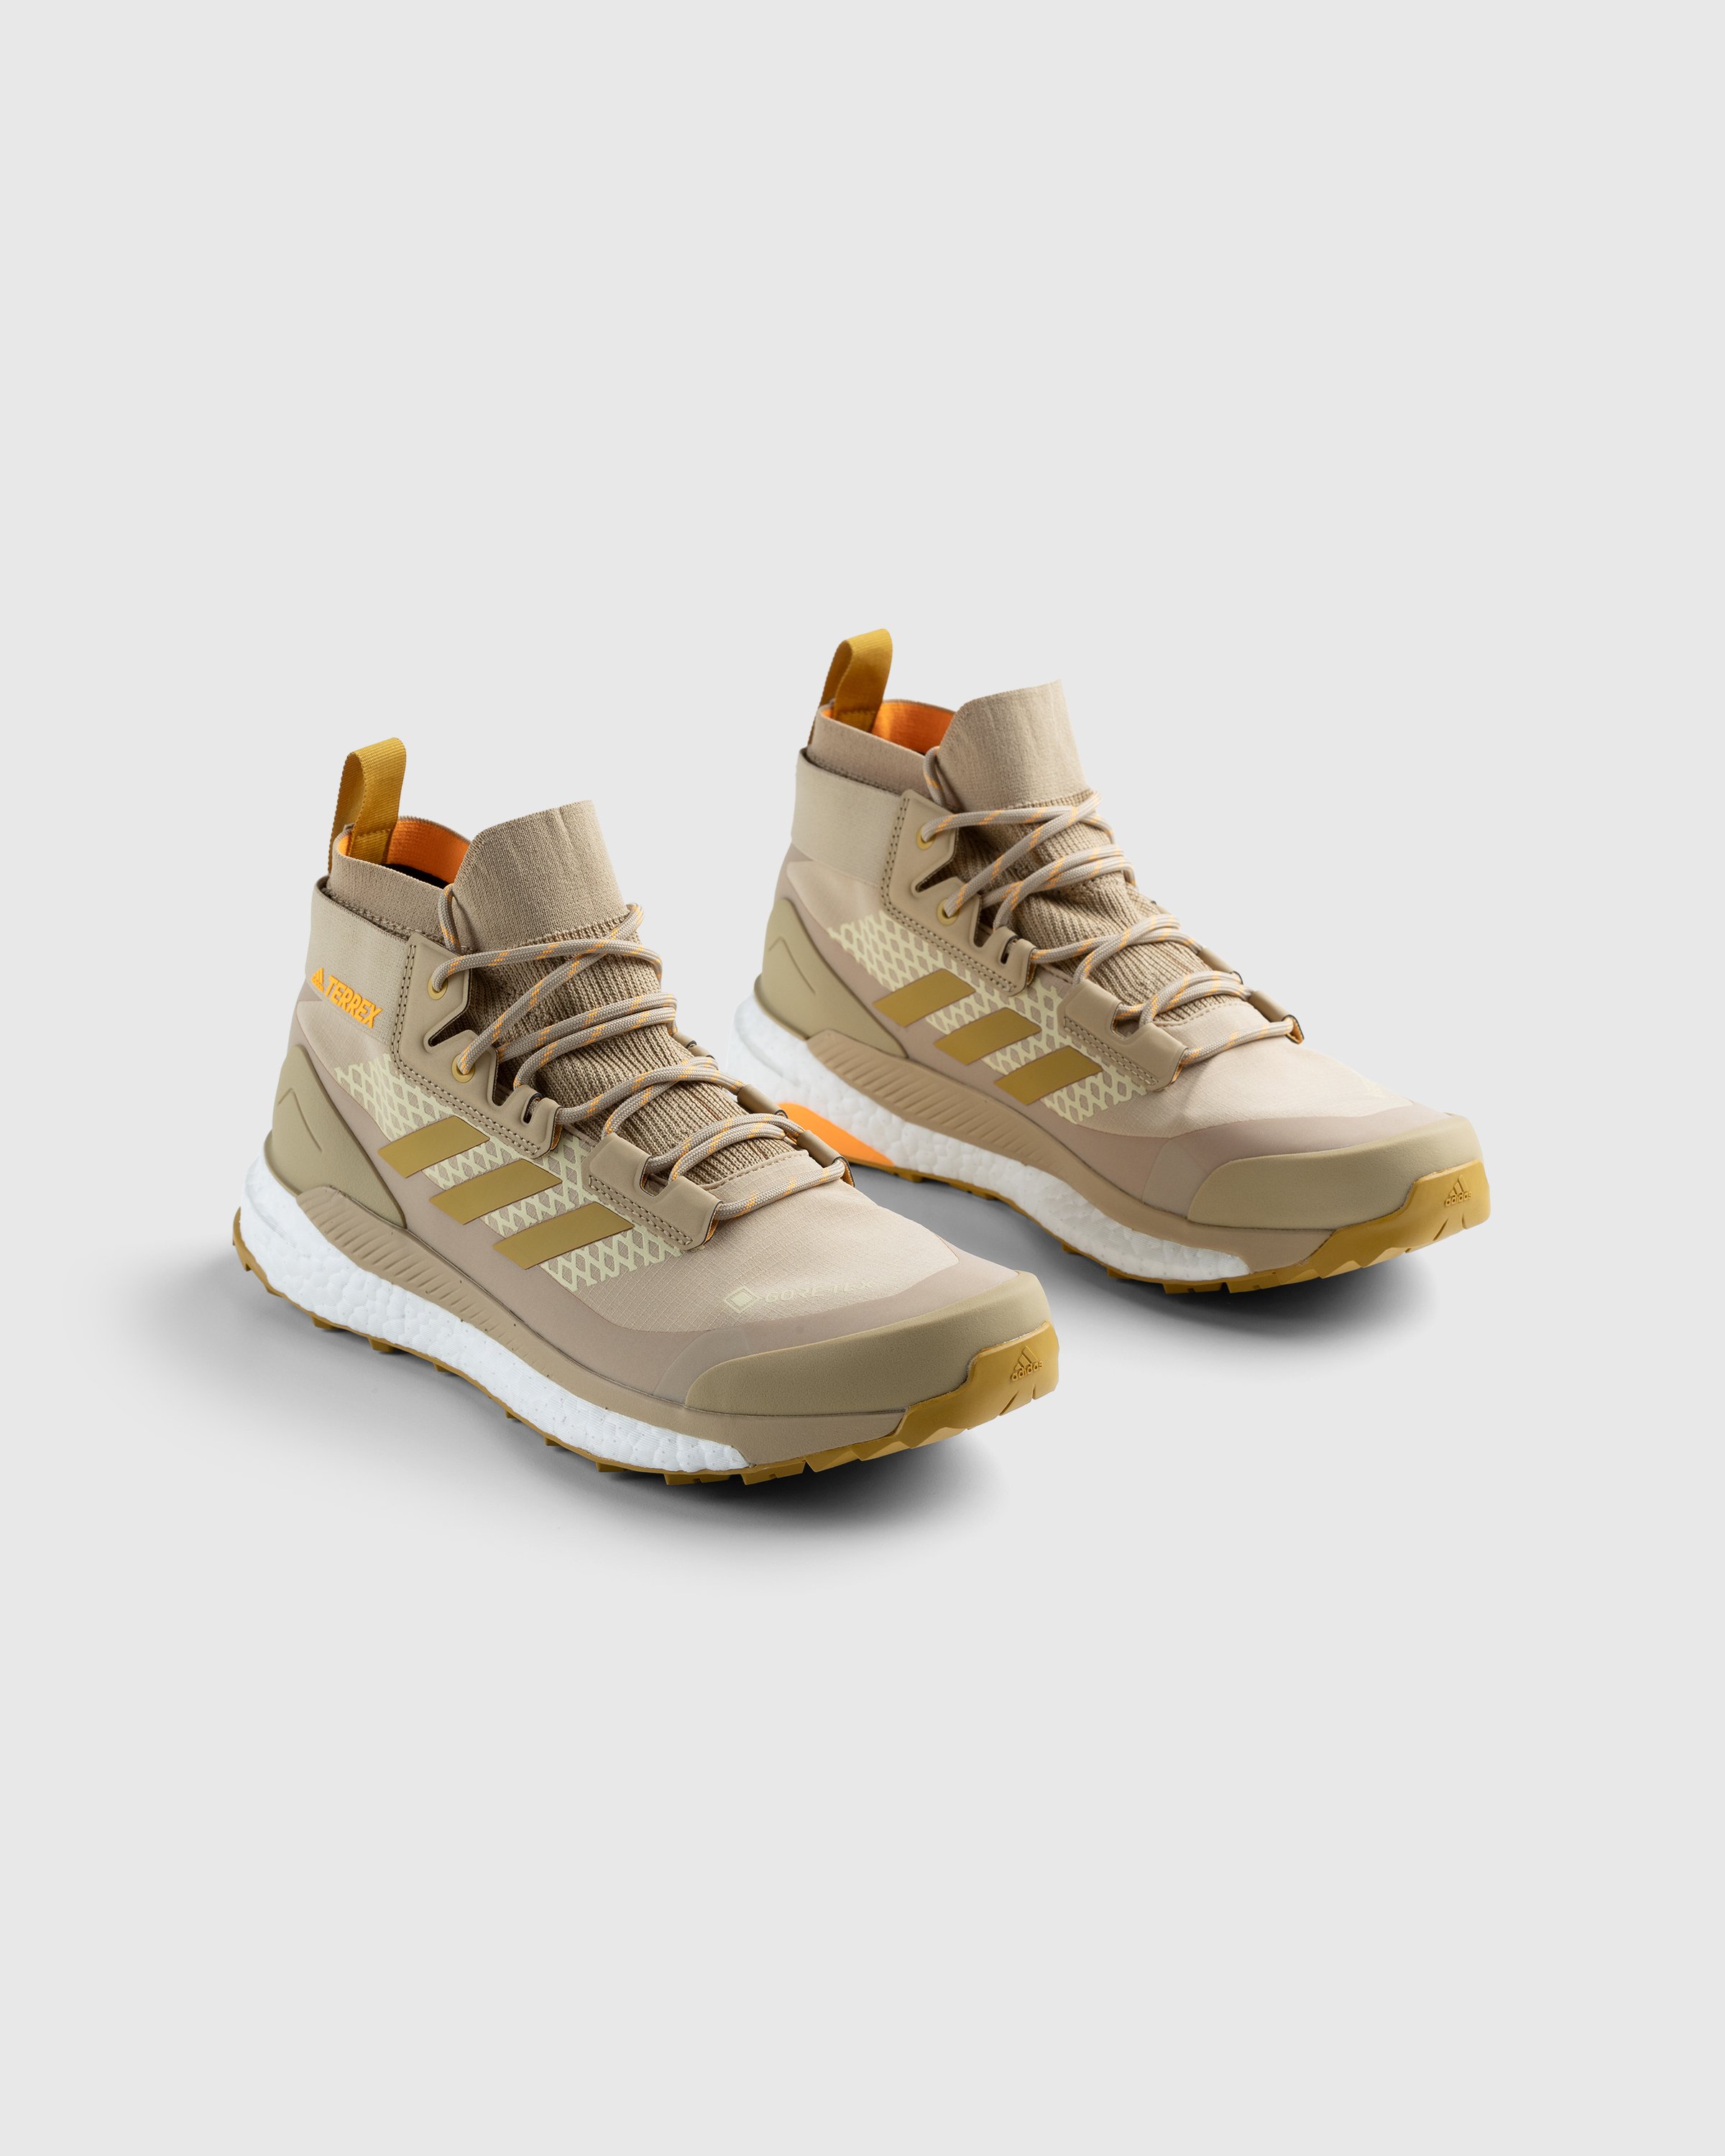 Adidas - Terrex Free Hiker Gore-Tex Beige/Gold - Footwear - Brown - Image 3